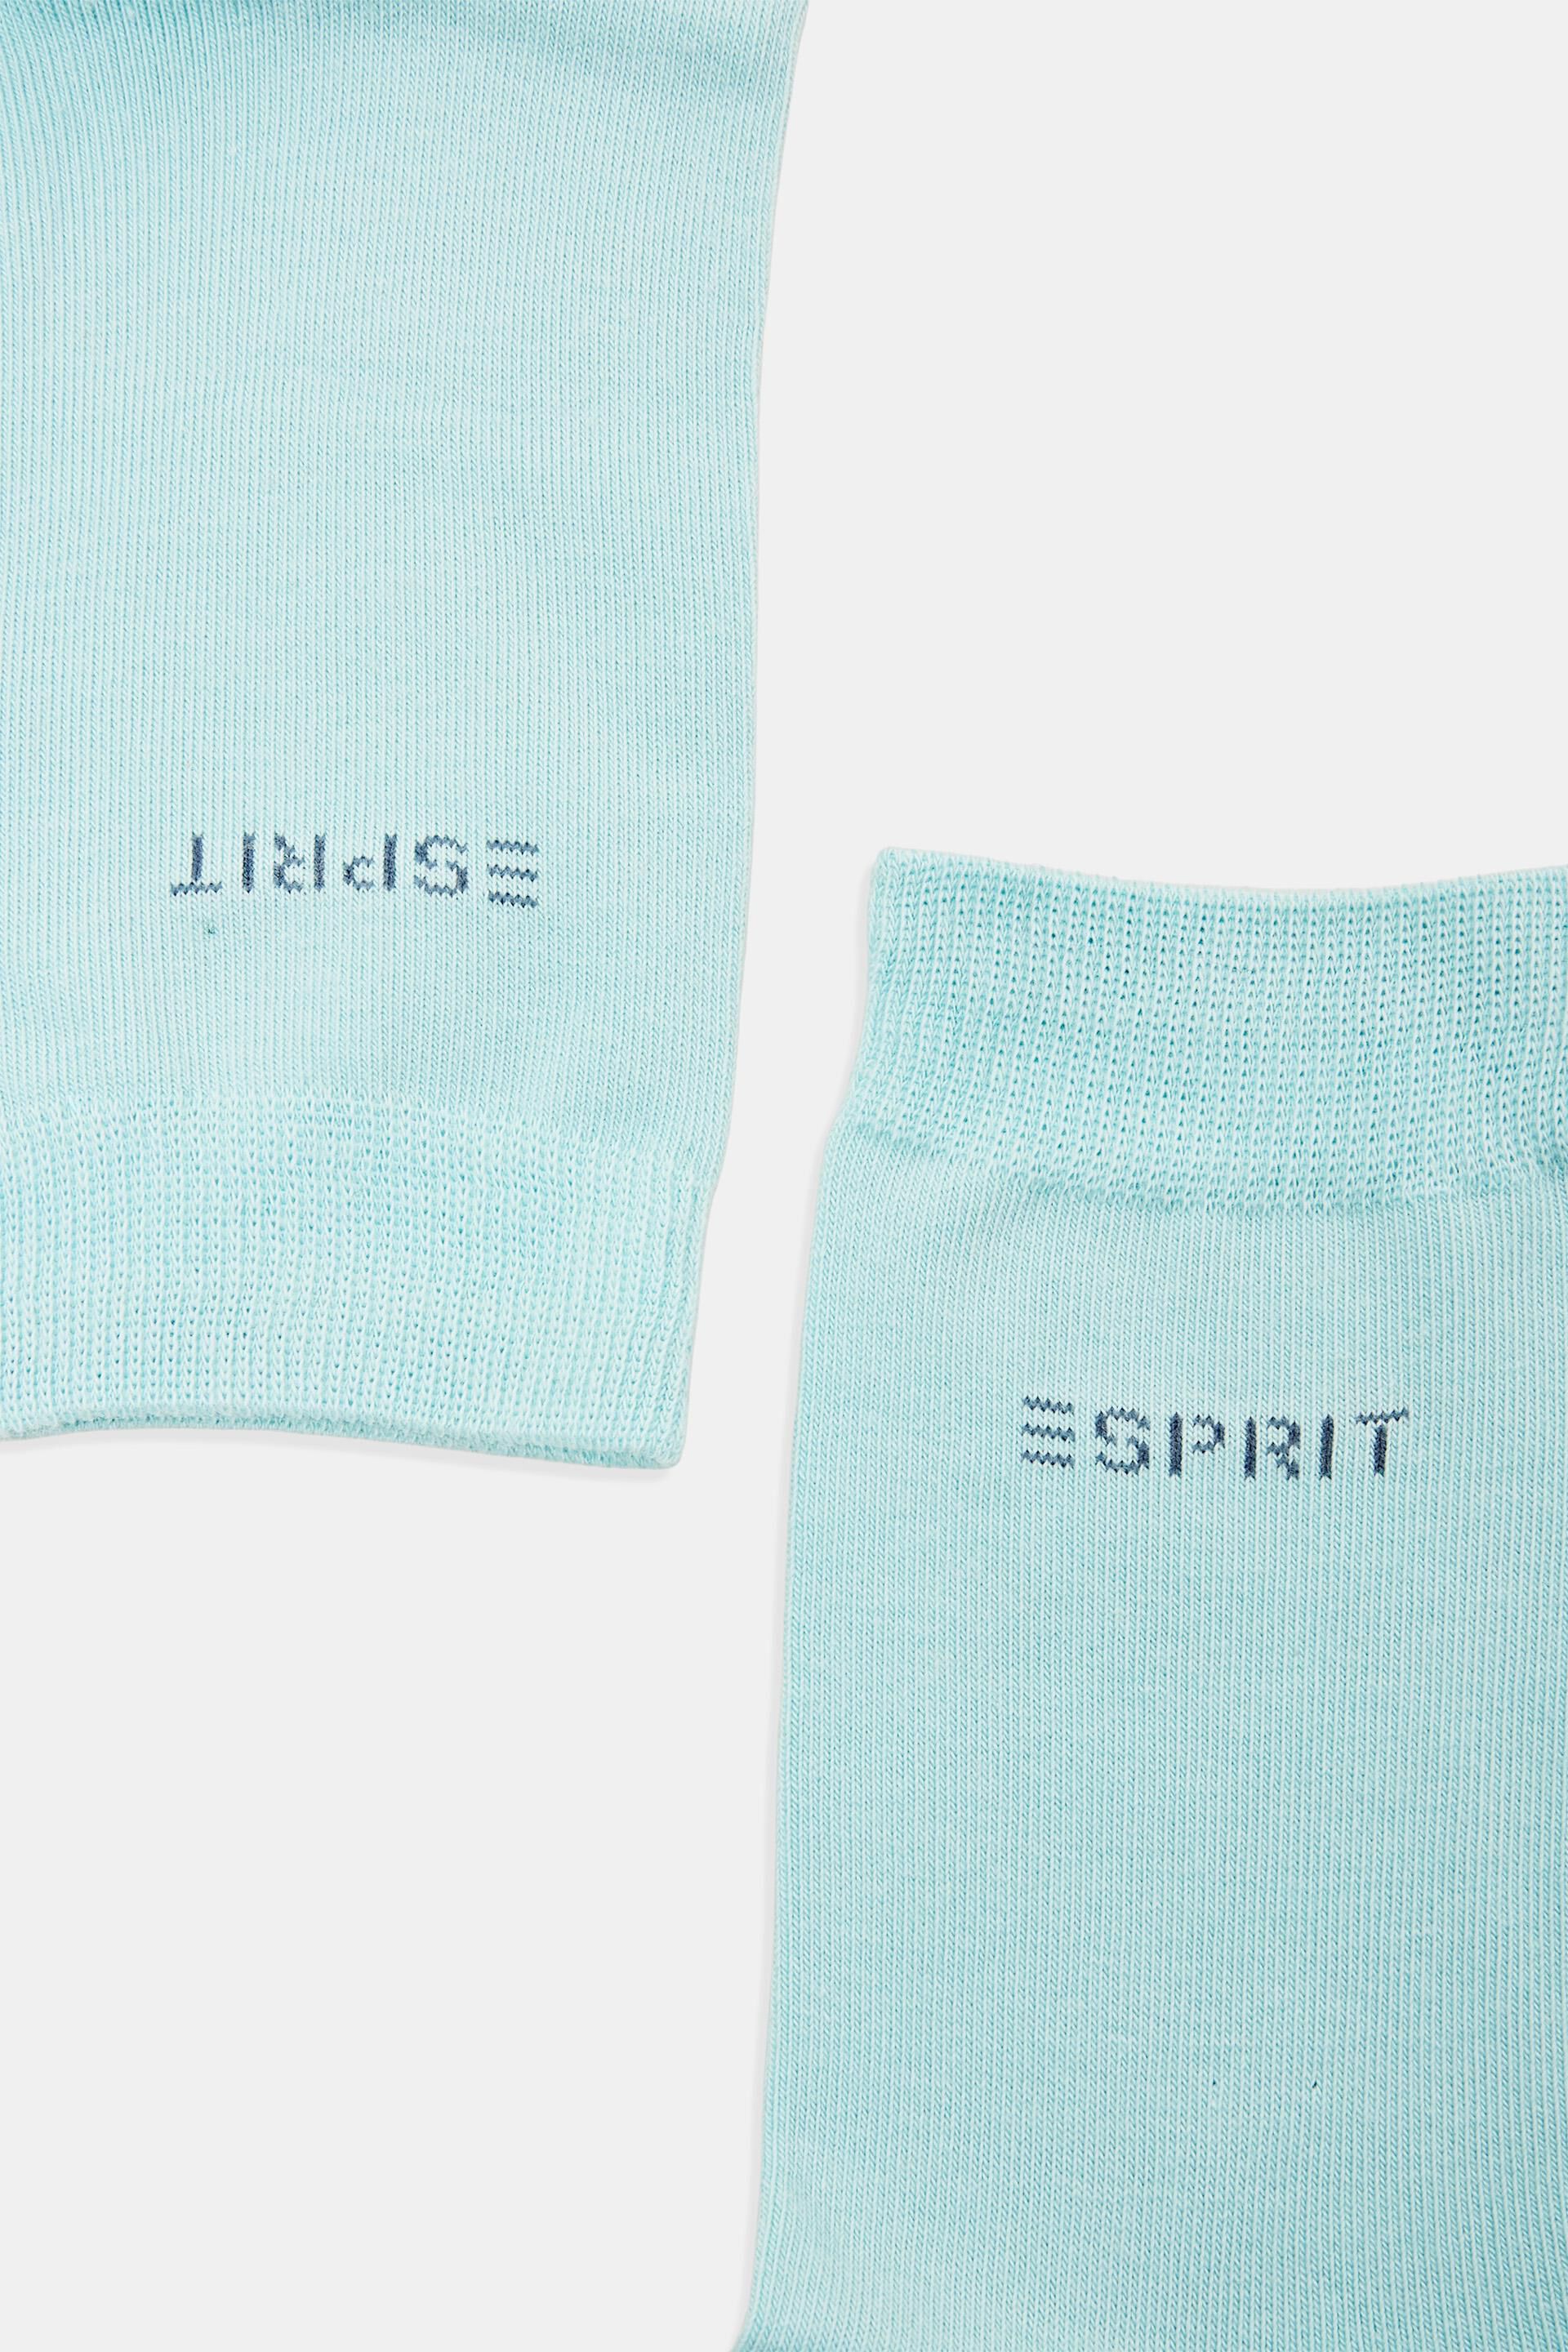 Esprit gestricktem Logo, mit Bio-Baumwolle Socken 2er-Pack